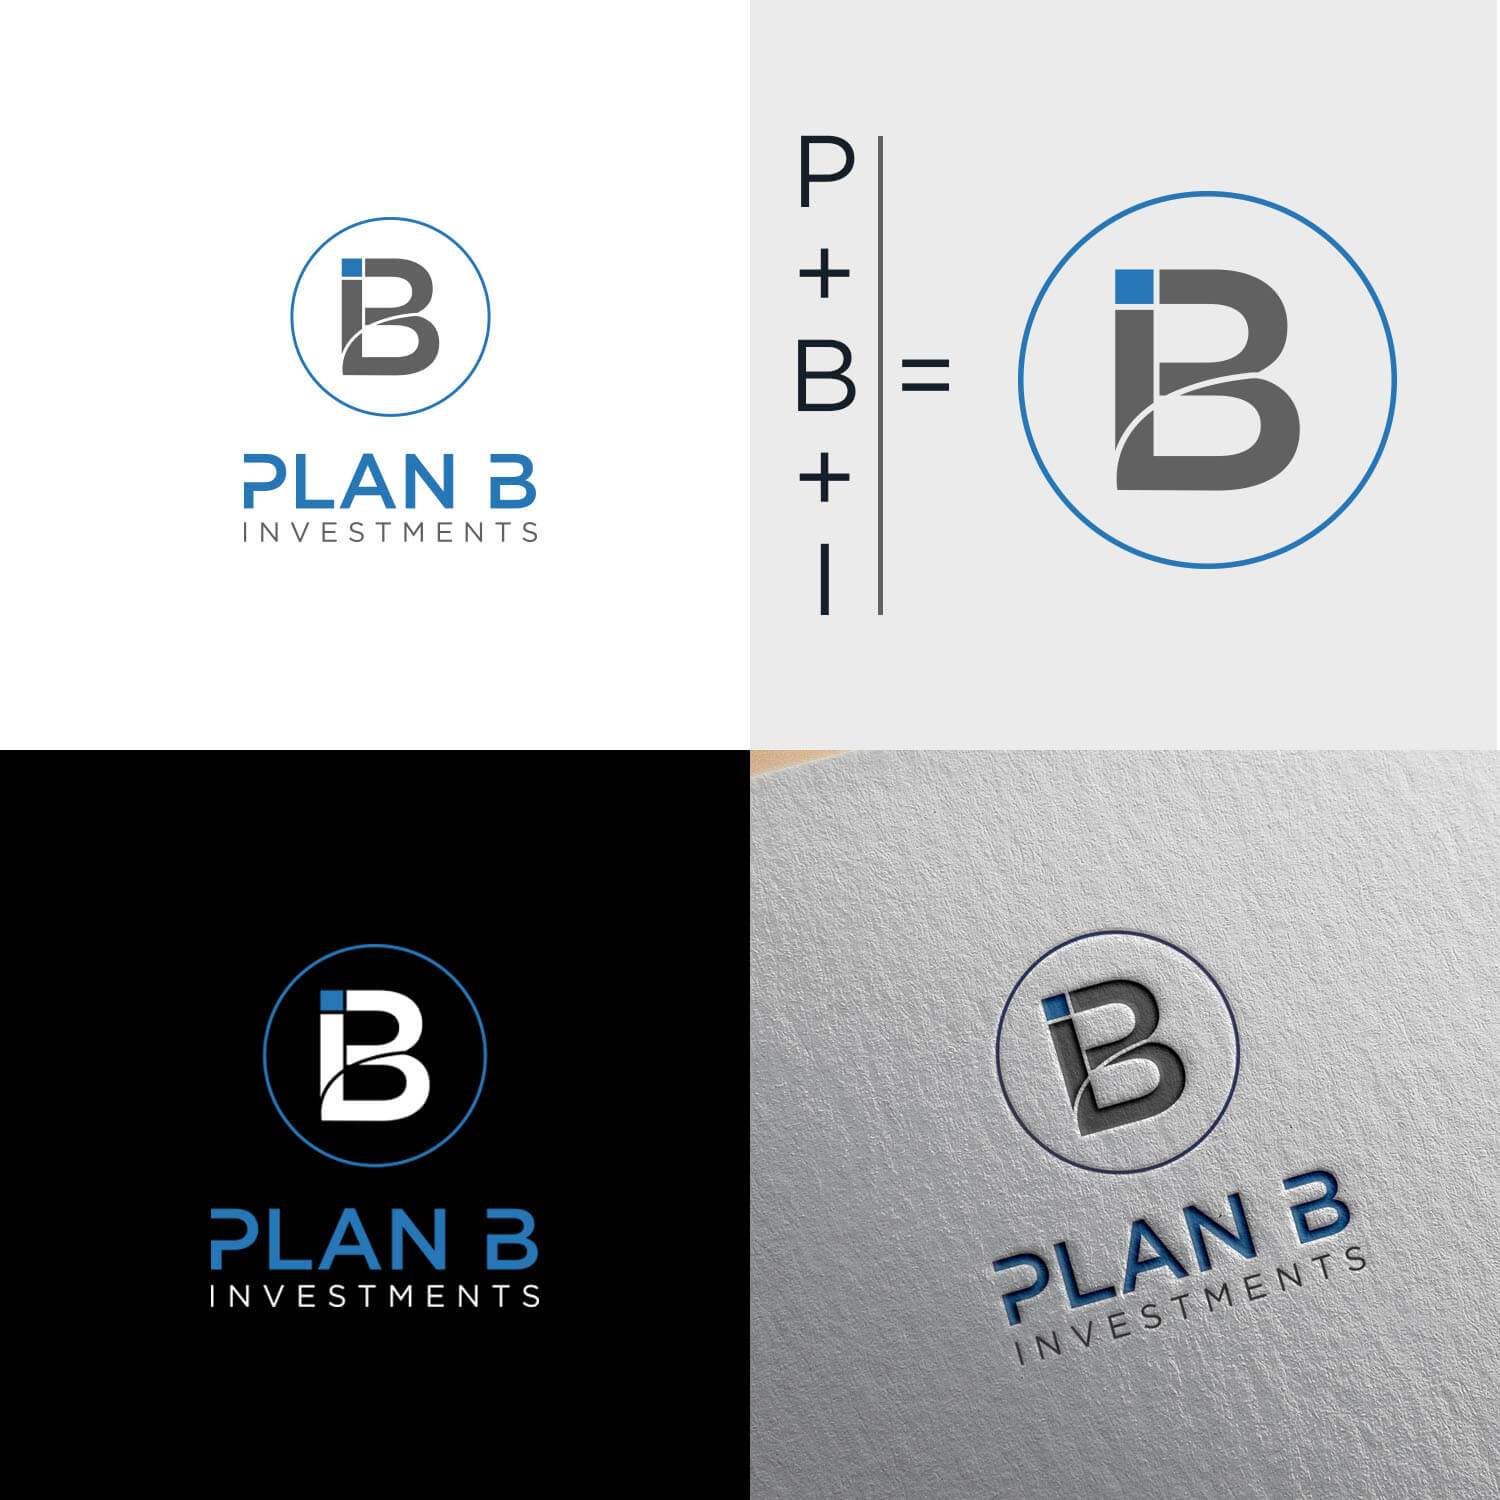 20+ mẫu thiết kế logo chữ B độc đáo - Bee Design